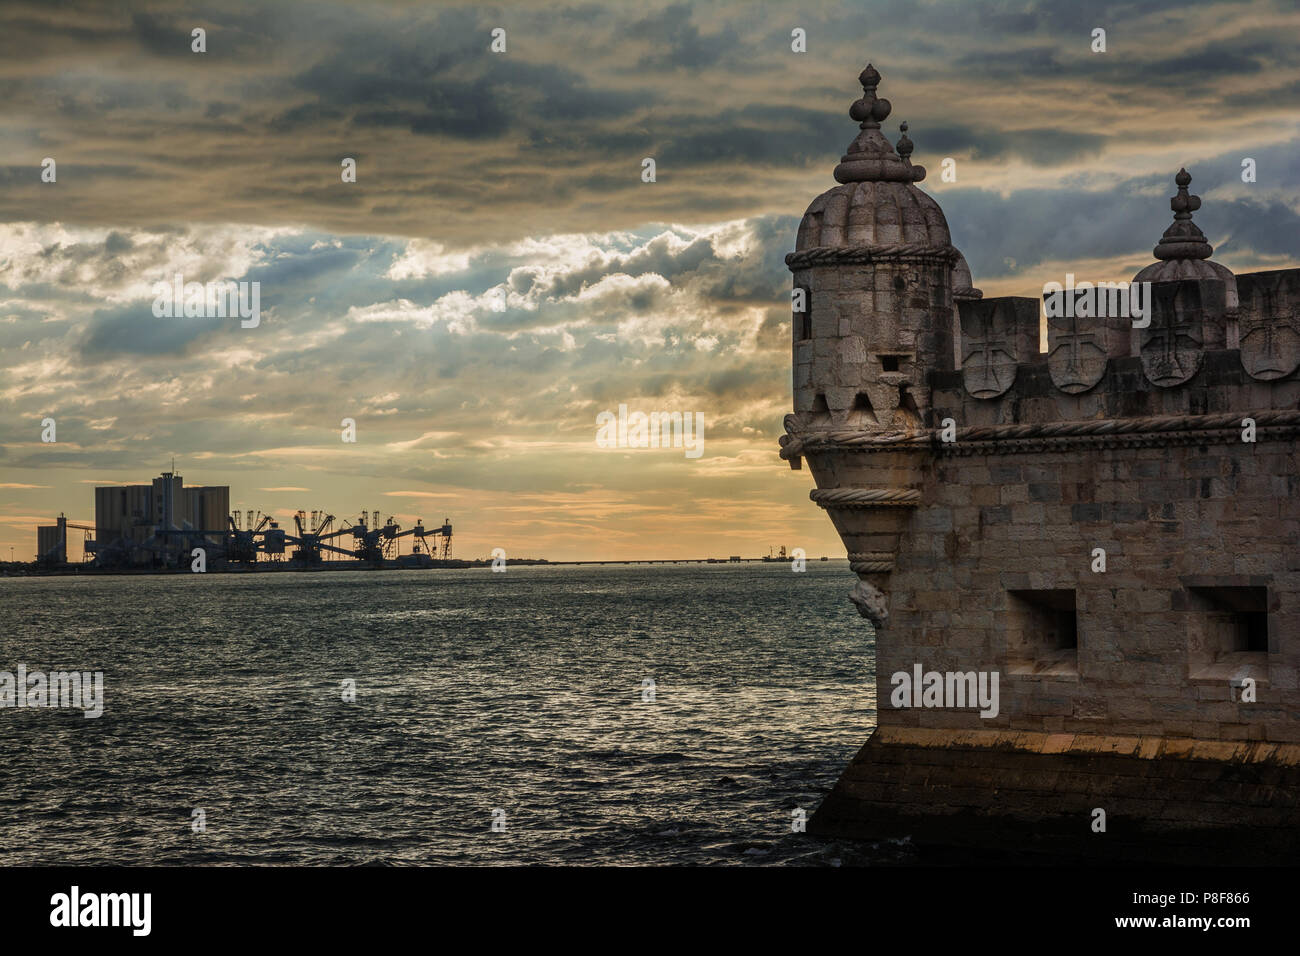 Vergangenheit und in Portugal. Alte Belem Turm Turm mit modernen Hafen Terminal am Meer, mit einem wunderschönen Sonnenuntergang Himmel Stockfoto